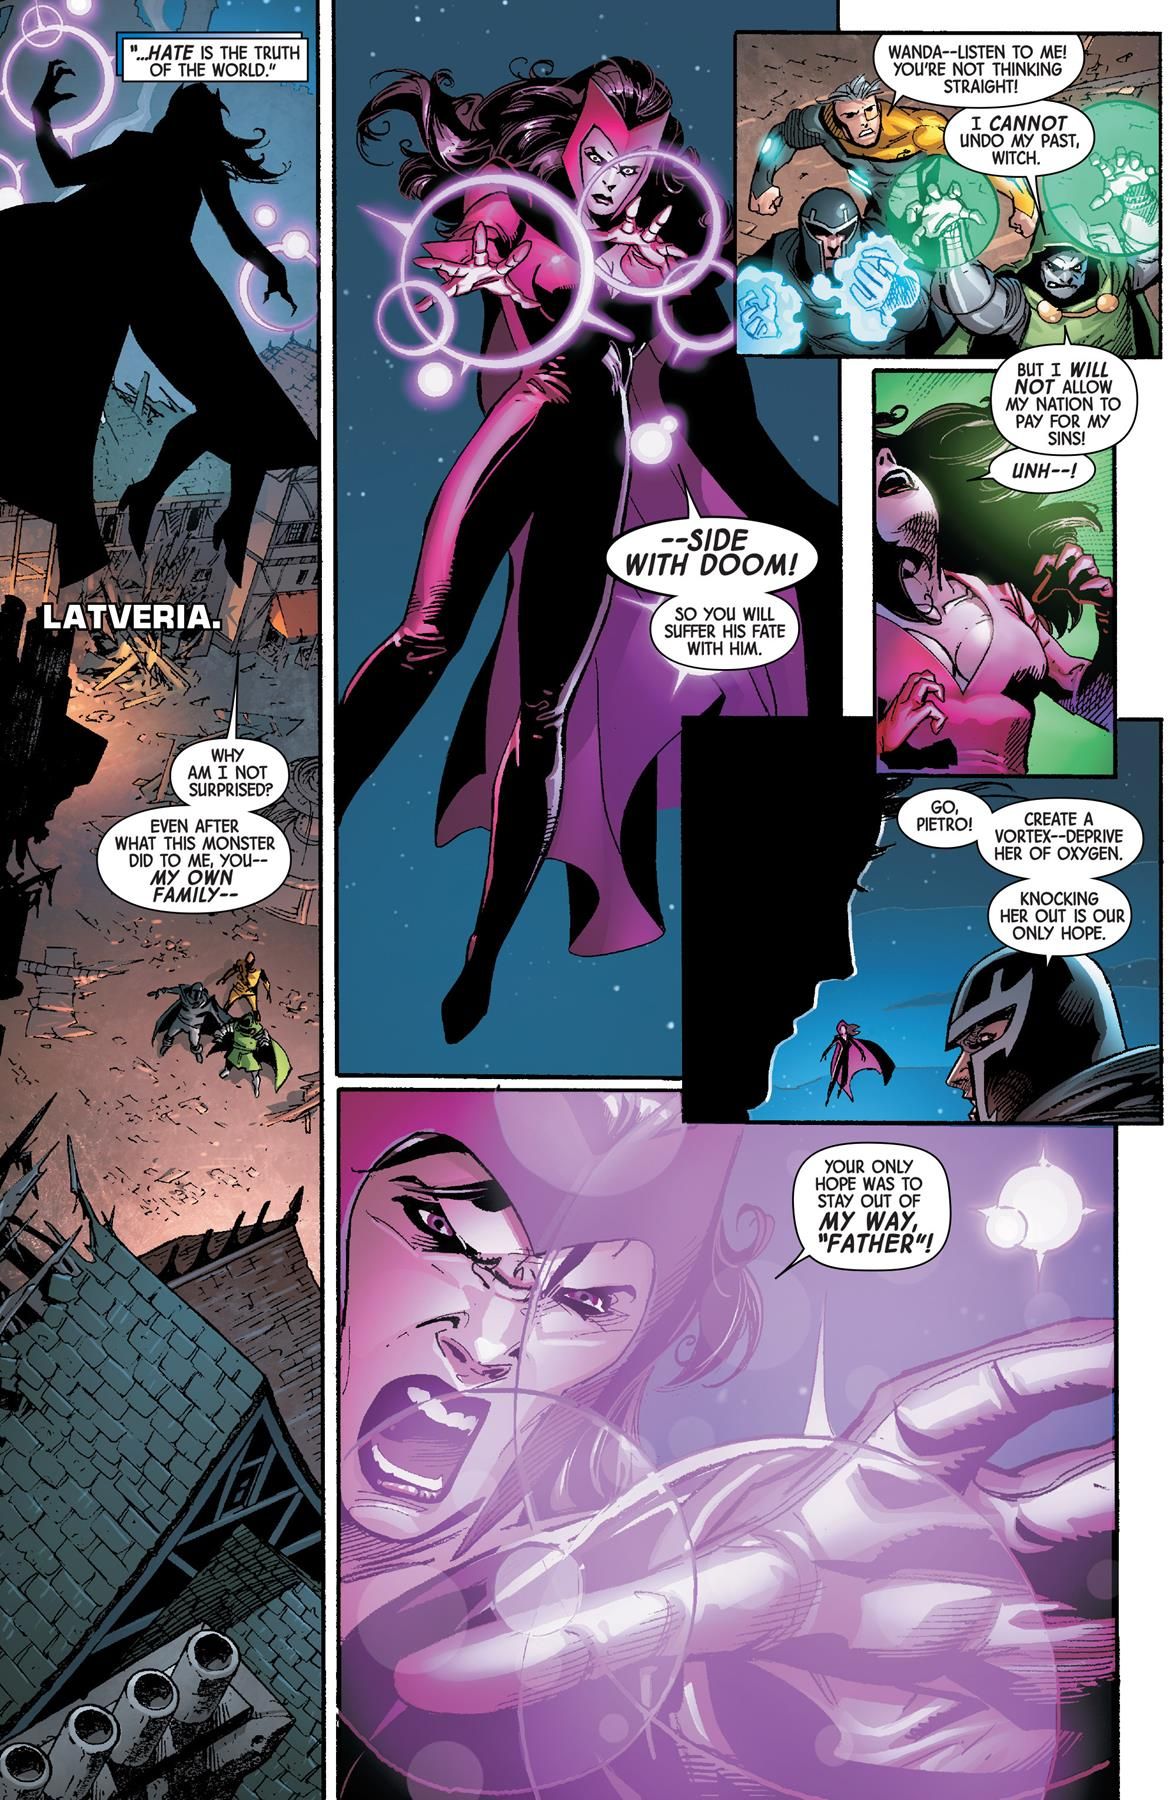 Scarlet Witch zaatakowała Magneto